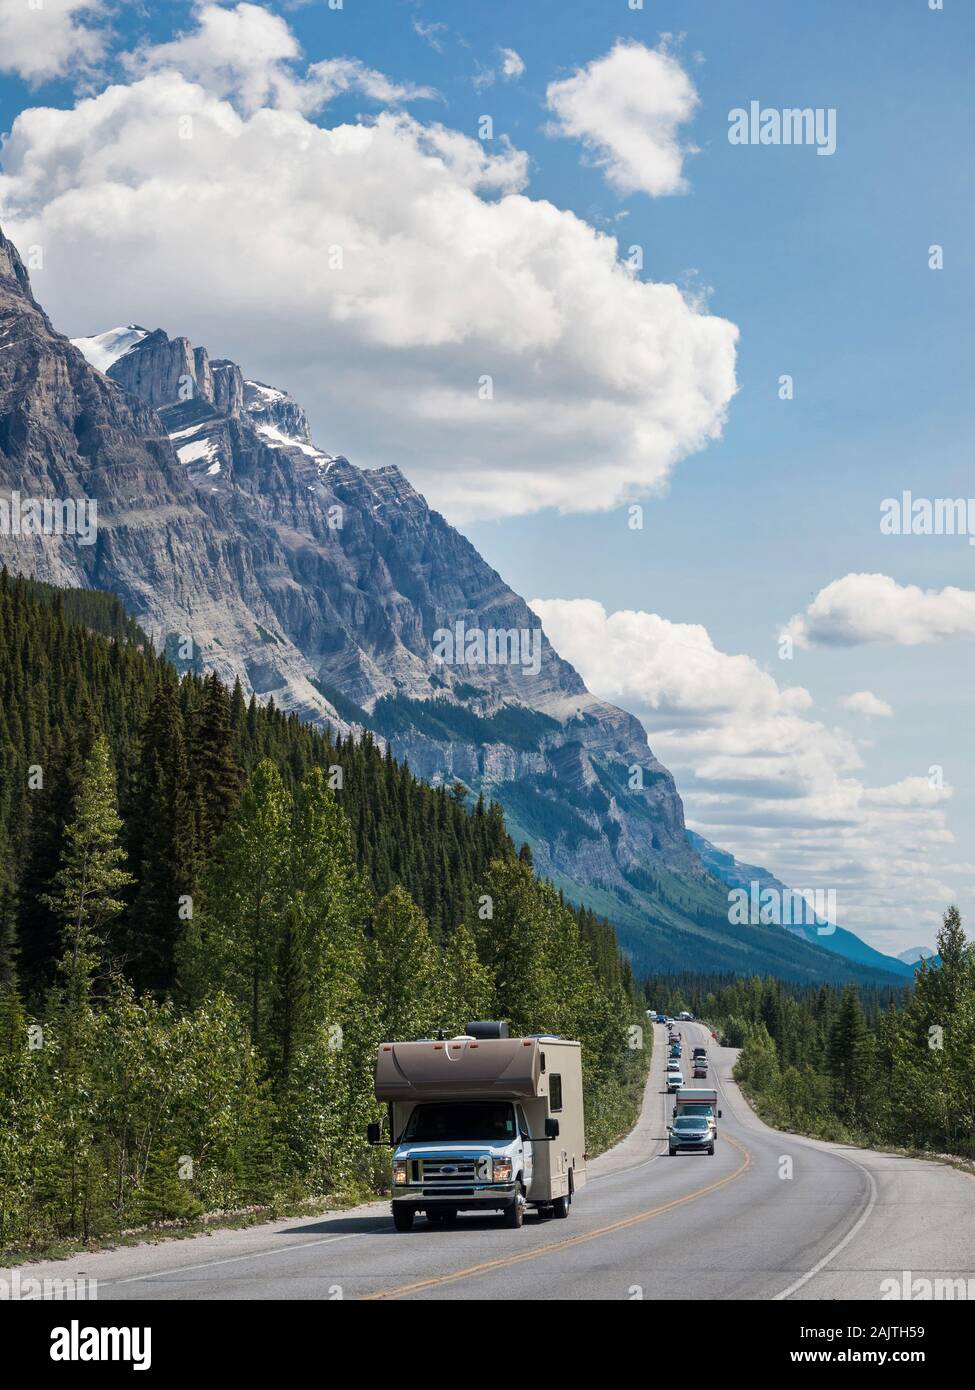 Fahrzeuge fahren auf der ikonischen Icefields Parkway Route zwischen Banff und Jasper Nationalparks in Alberta, Kanada. Stockfoto